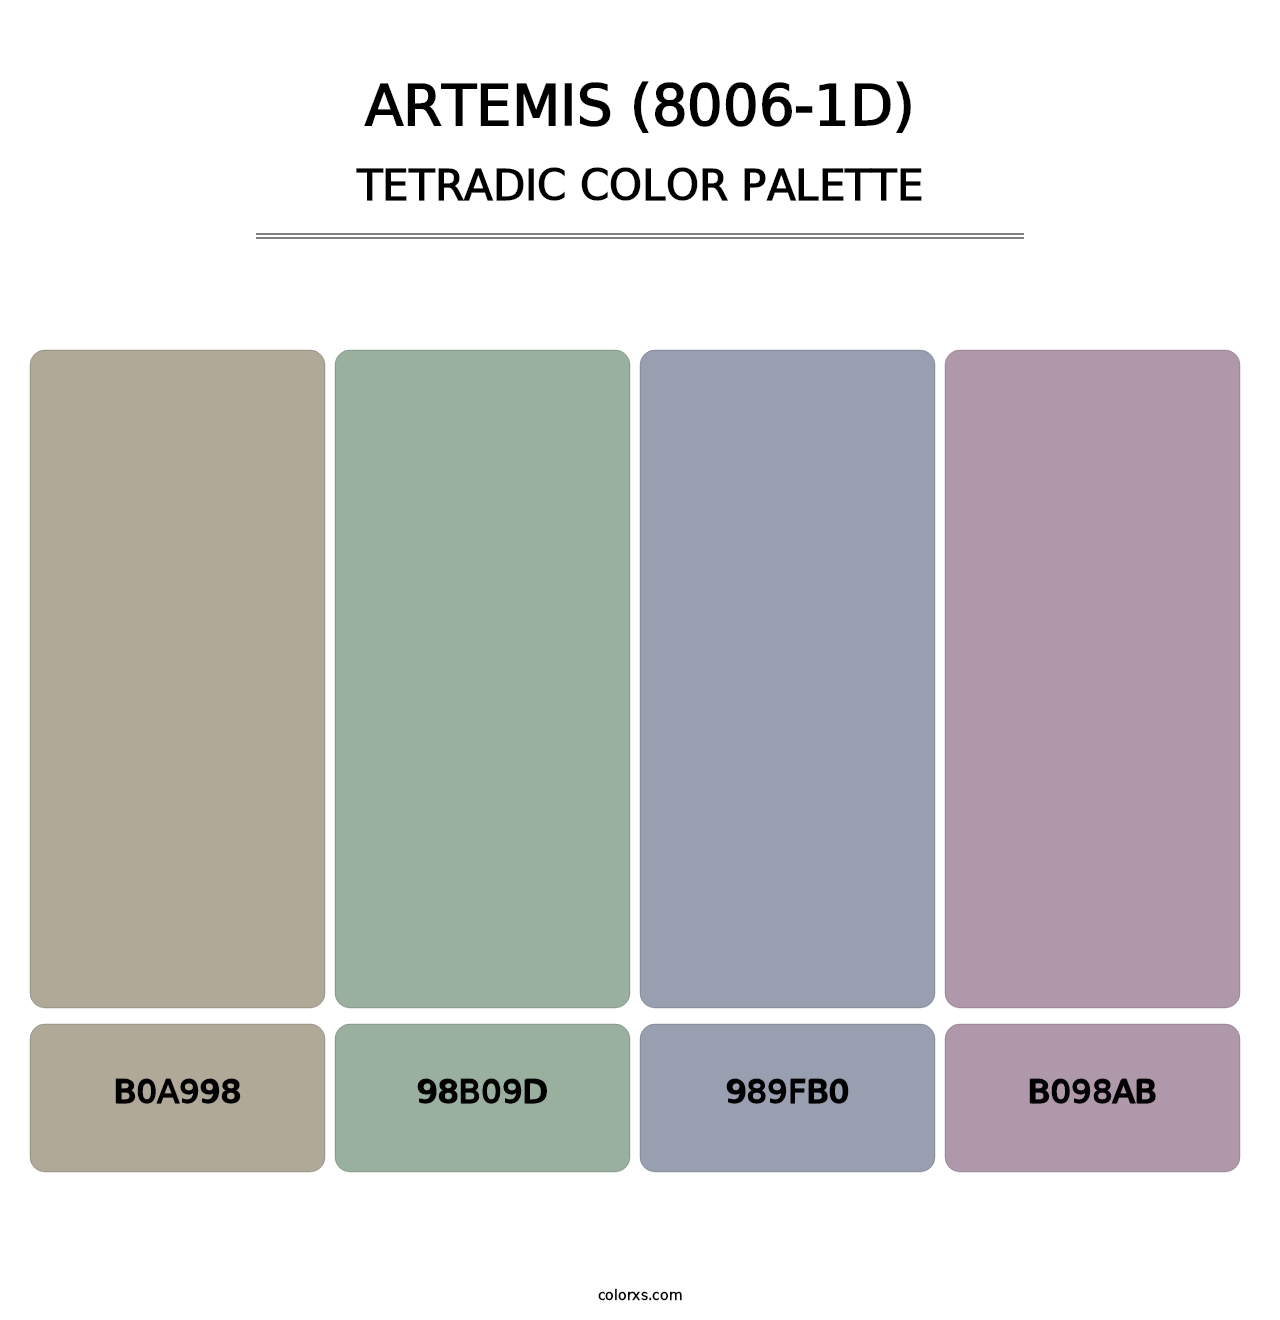 Artemis (8006-1D) - Tetradic Color Palette